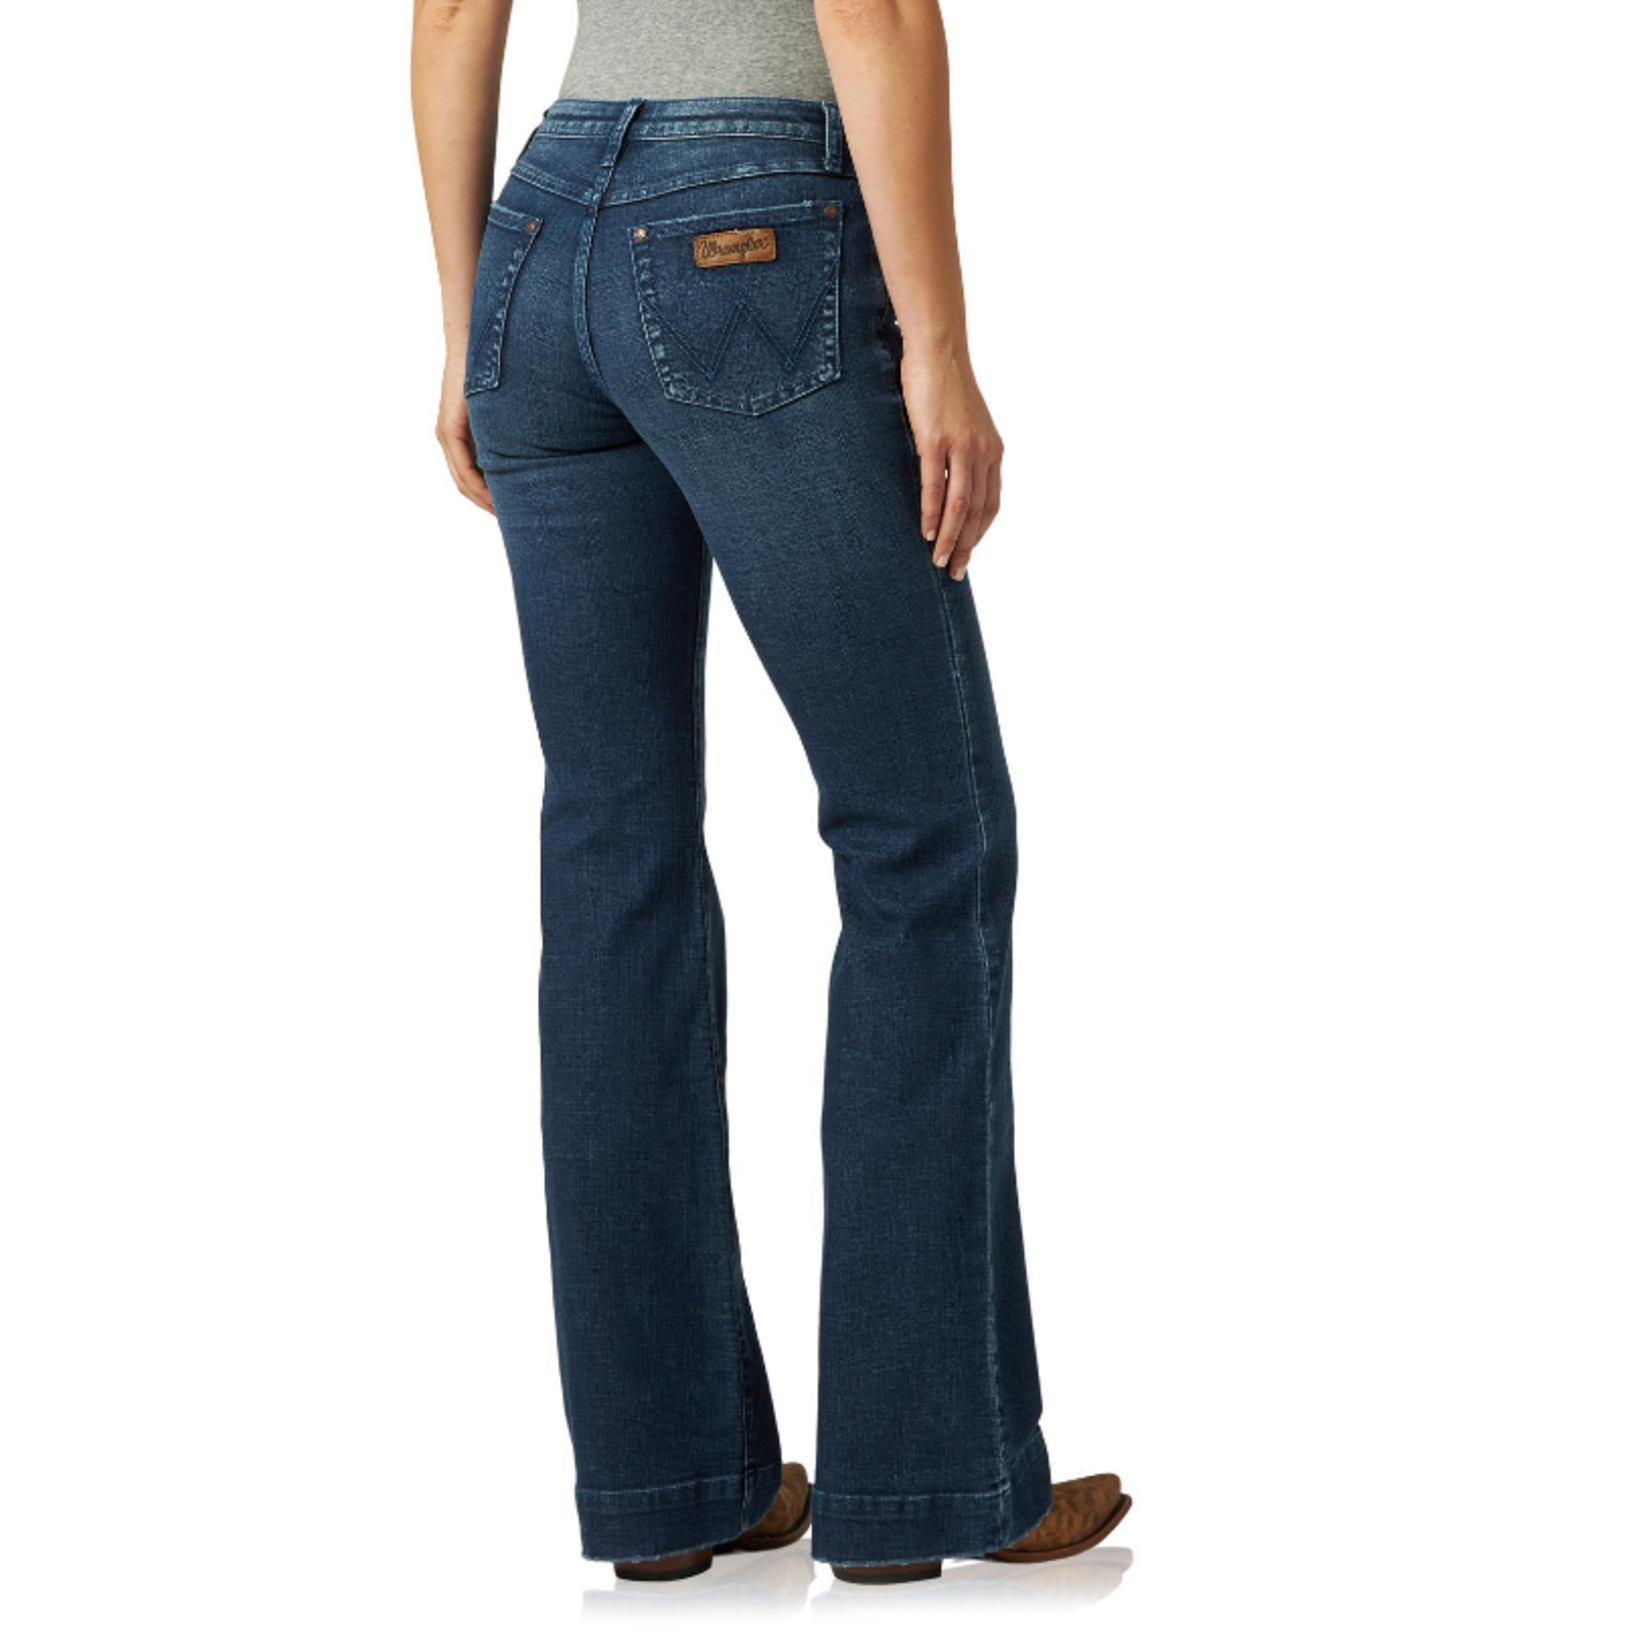 Wrangler Wrangler - Retro Trouser Jean - Mid Rise - 1009MWWSA